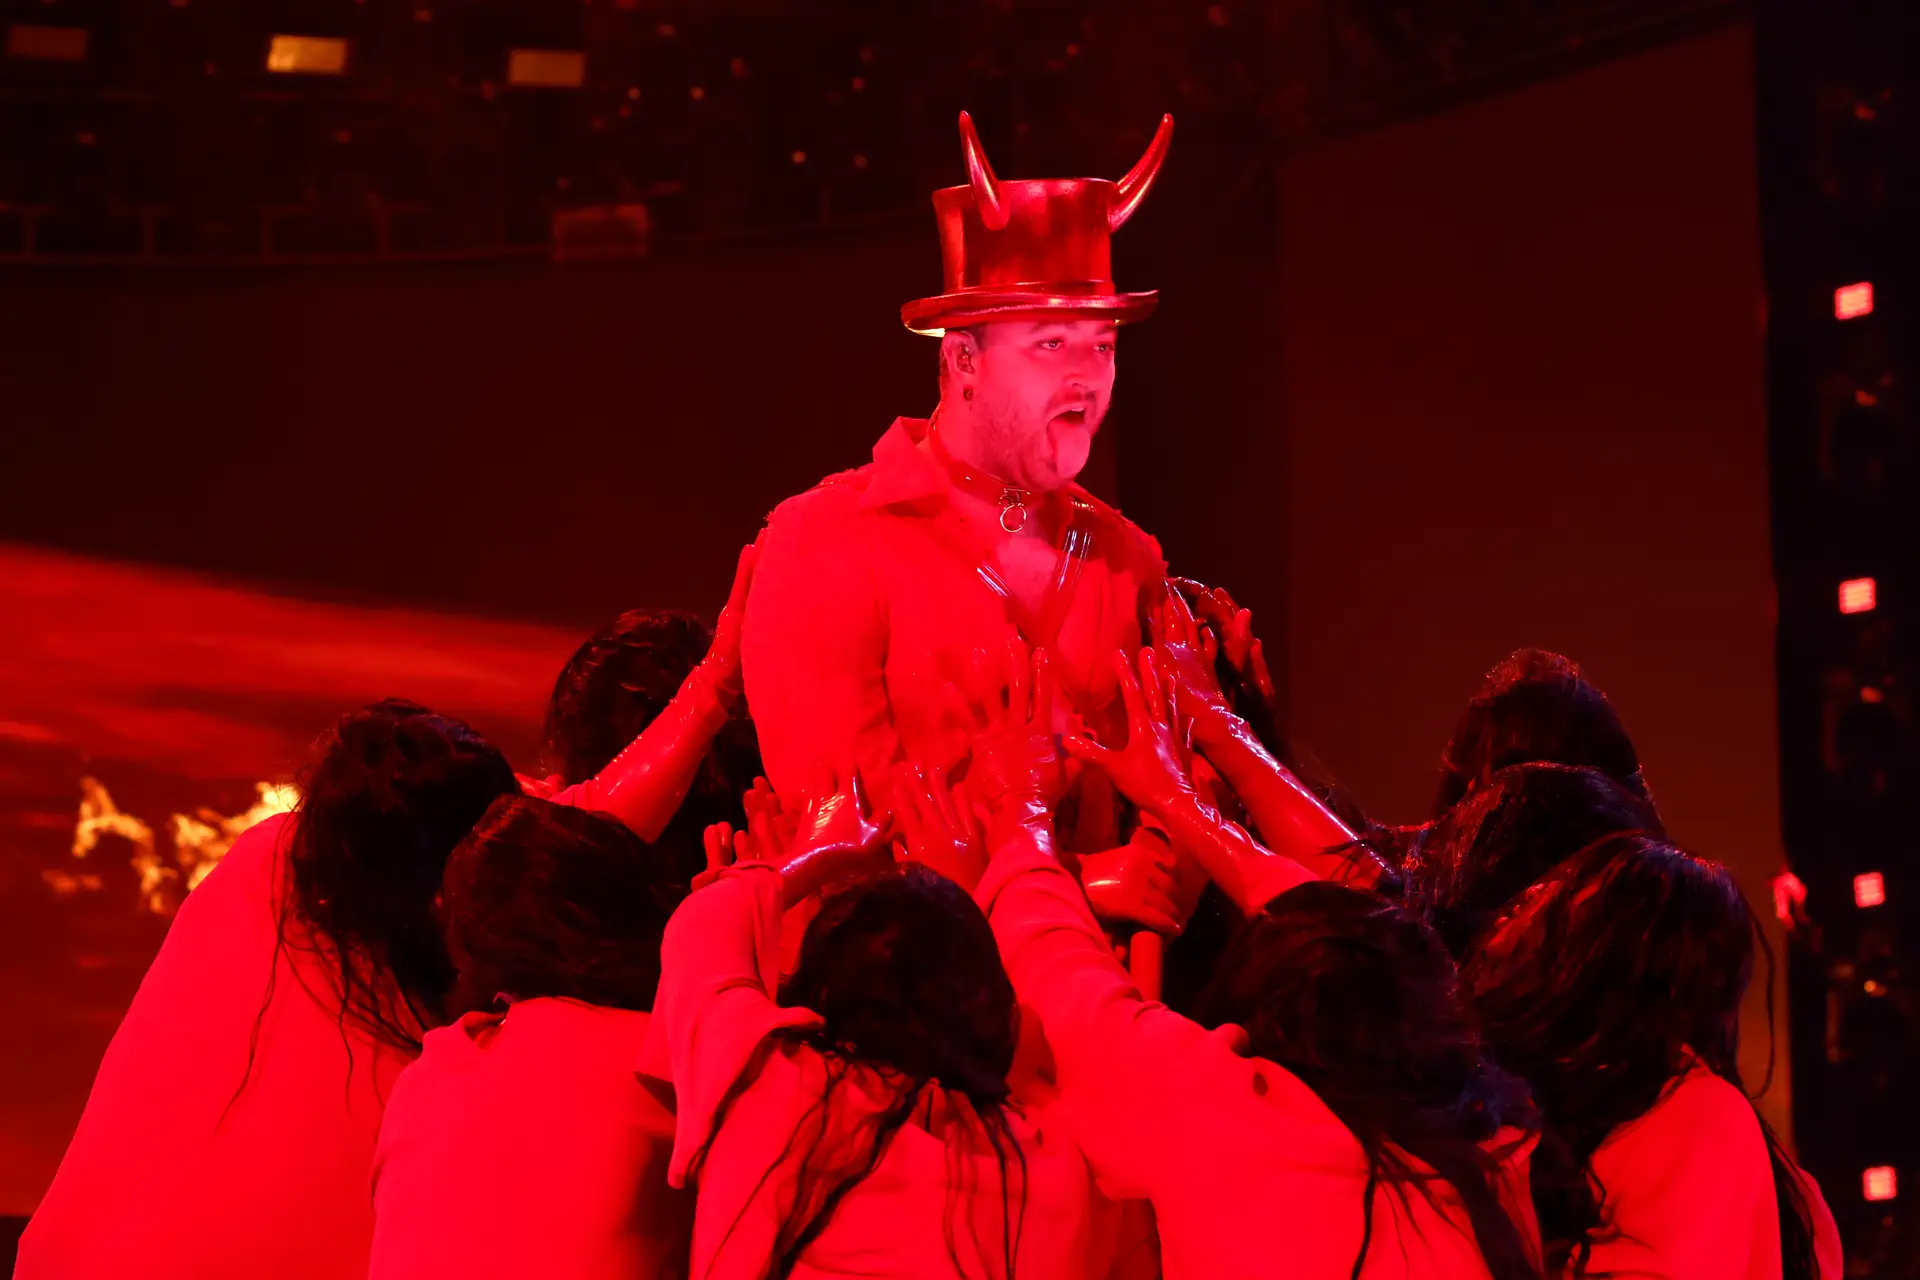 Atuação de Sam Smith nos Grammys comparada a ritual satânico: “Querem ensinar os nossos filhos a adorar Satanás”